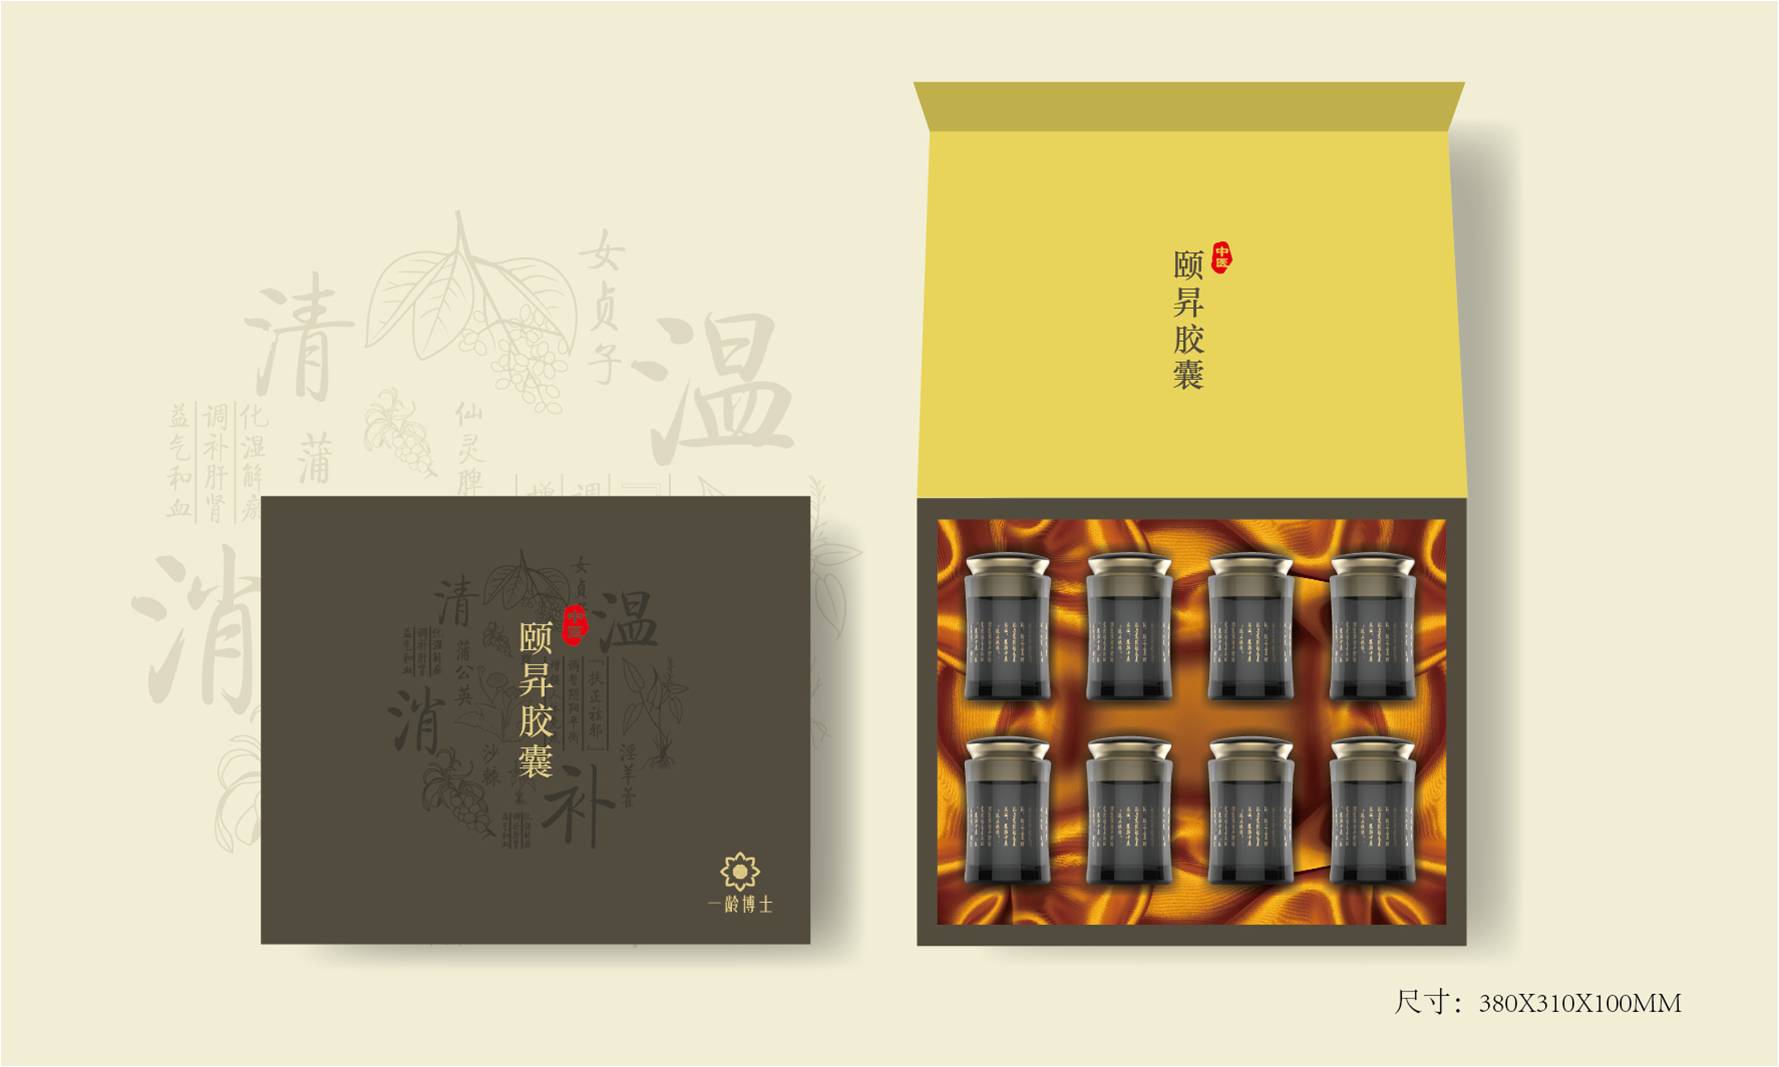 畅销扬州礼盒包装设计公司作品TOP3名单发布 